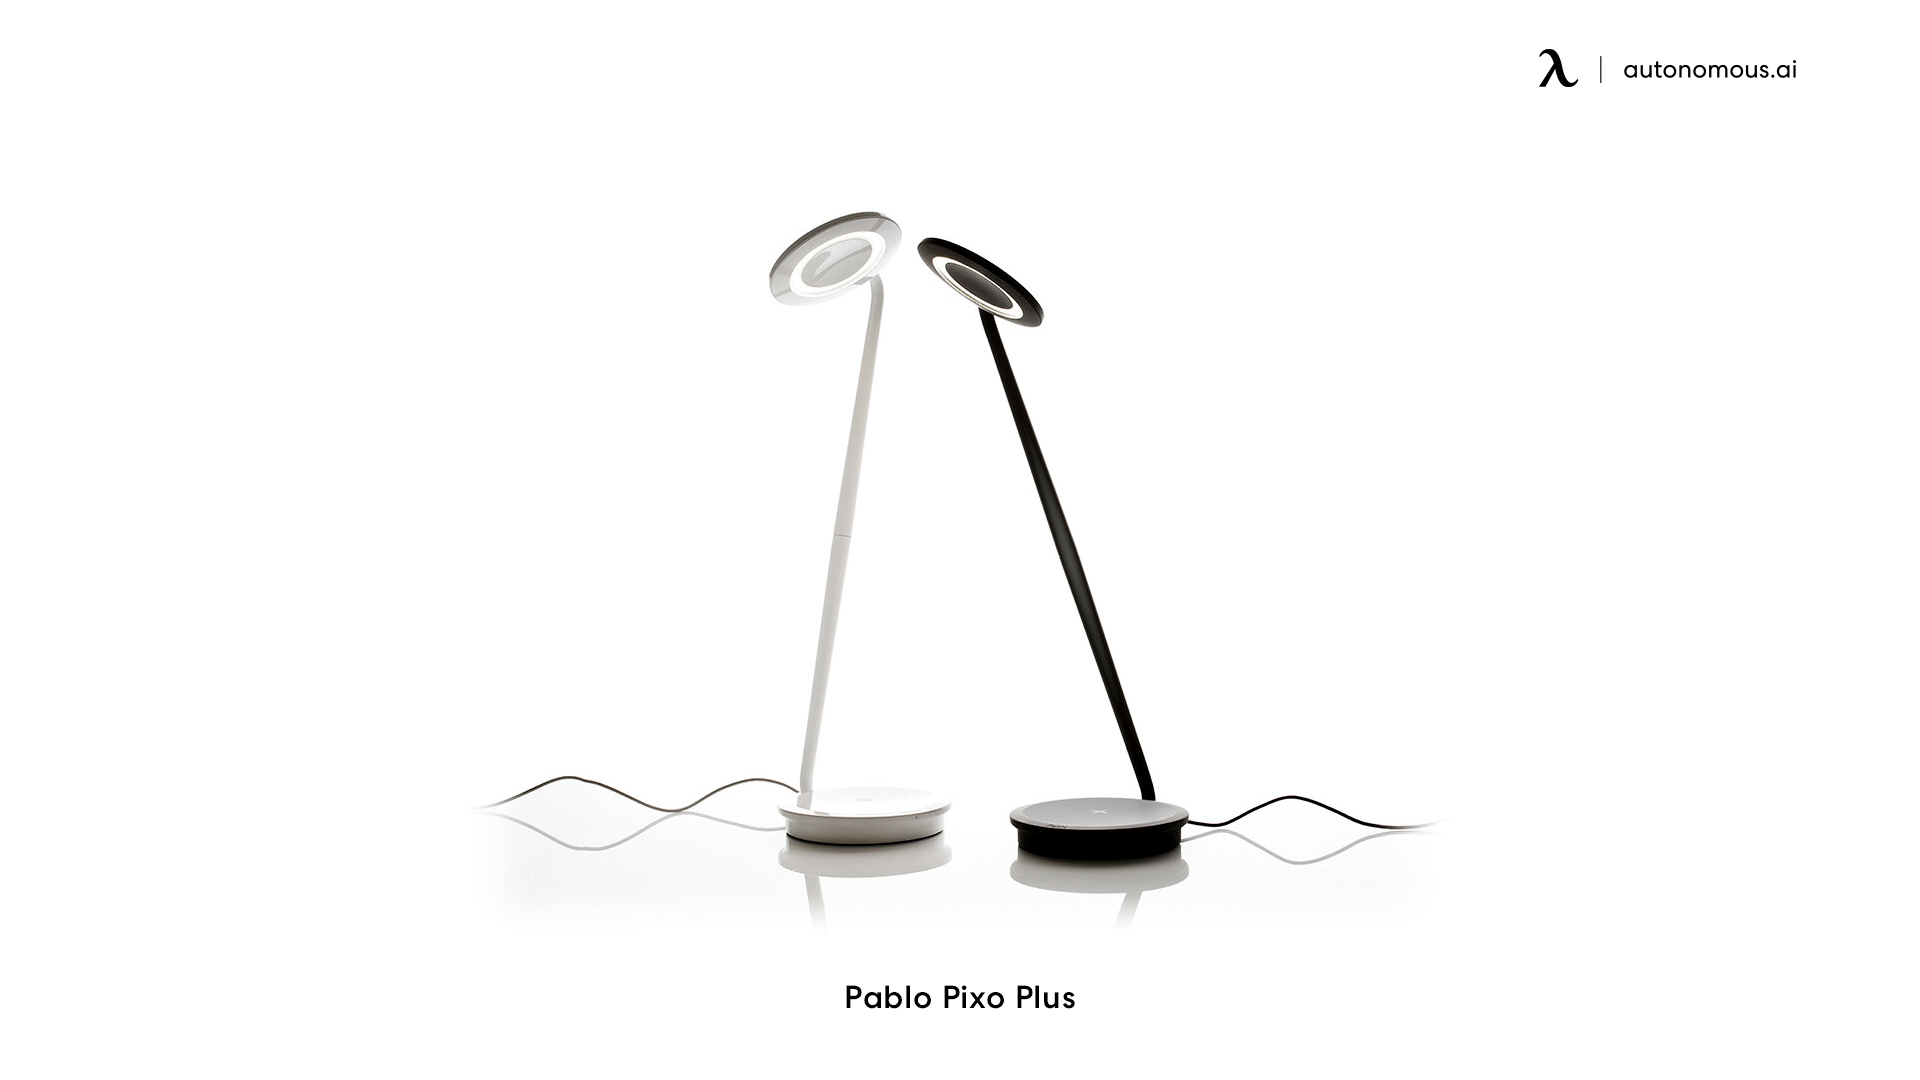 Pablo Pixo Plus light for office desk